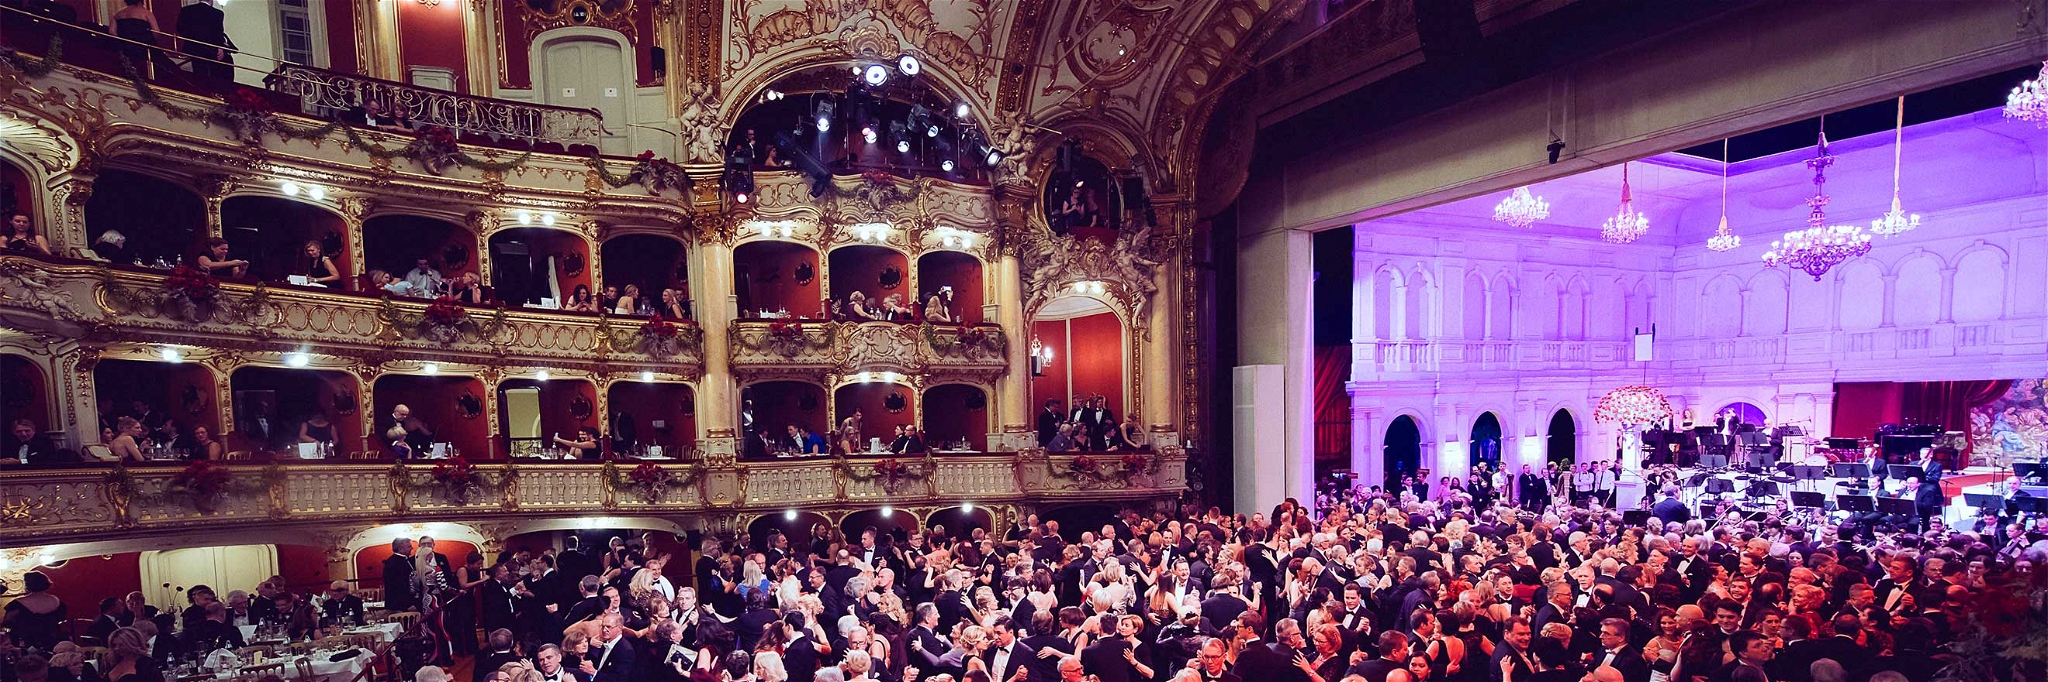 Grazer Opernredoute wurde 2018 als erster großer Ball mit dem österreichischem Umweltzeichen ausgezeichnet.